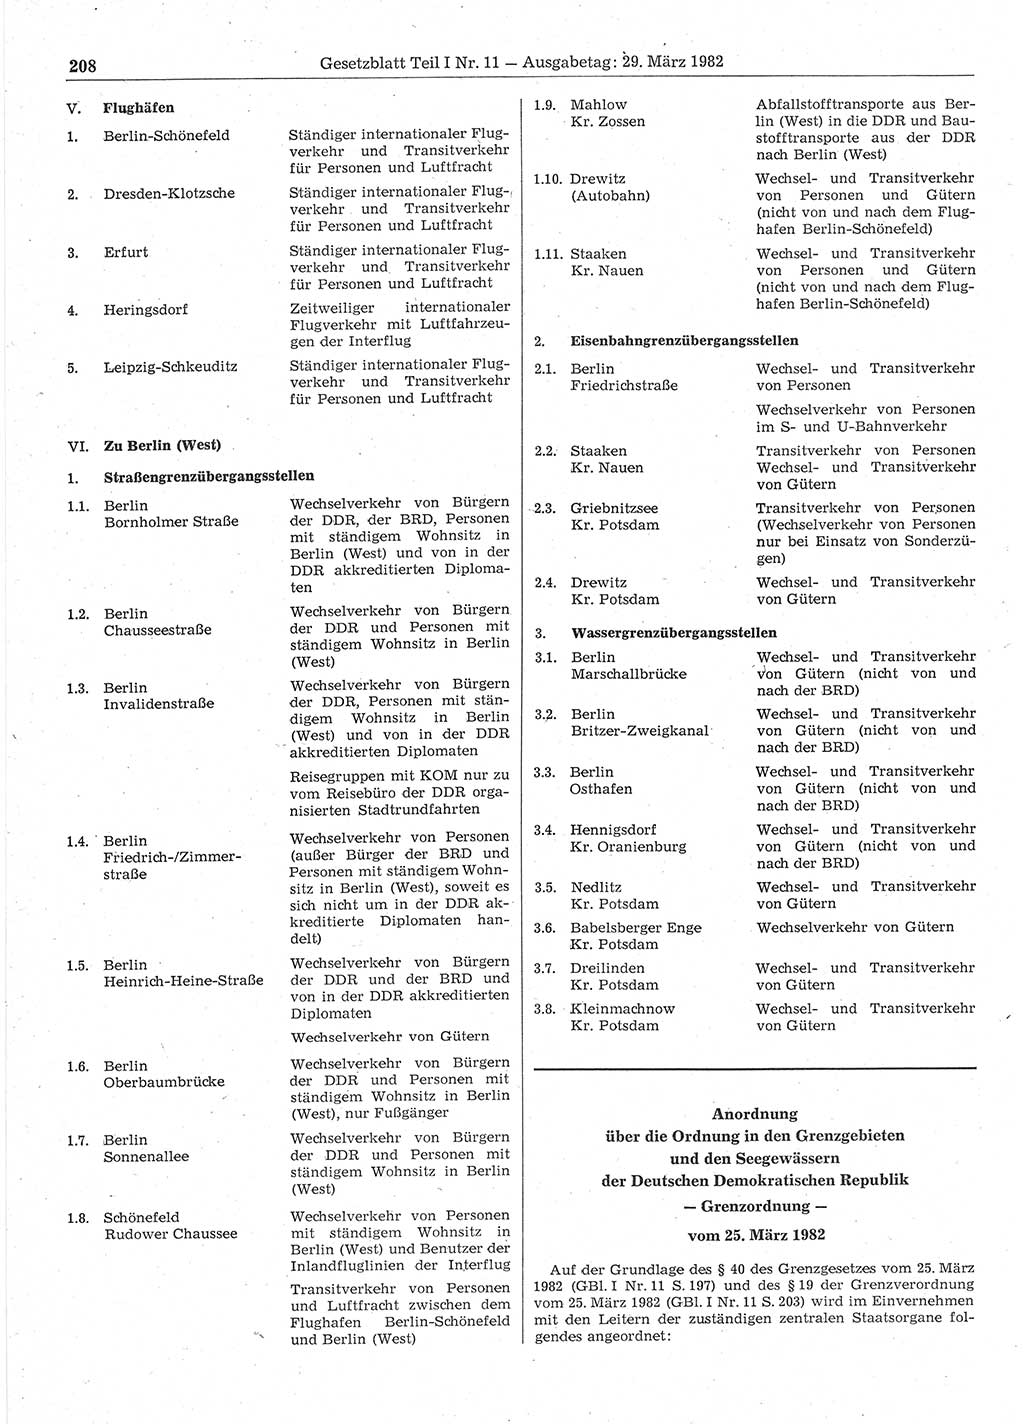 Gesetzblatt (GBl.) der Deutschen Demokratischen Republik (DDR) Teil Ⅰ 1982, Seite 208 (GBl. DDR Ⅰ 1982, S. 208)